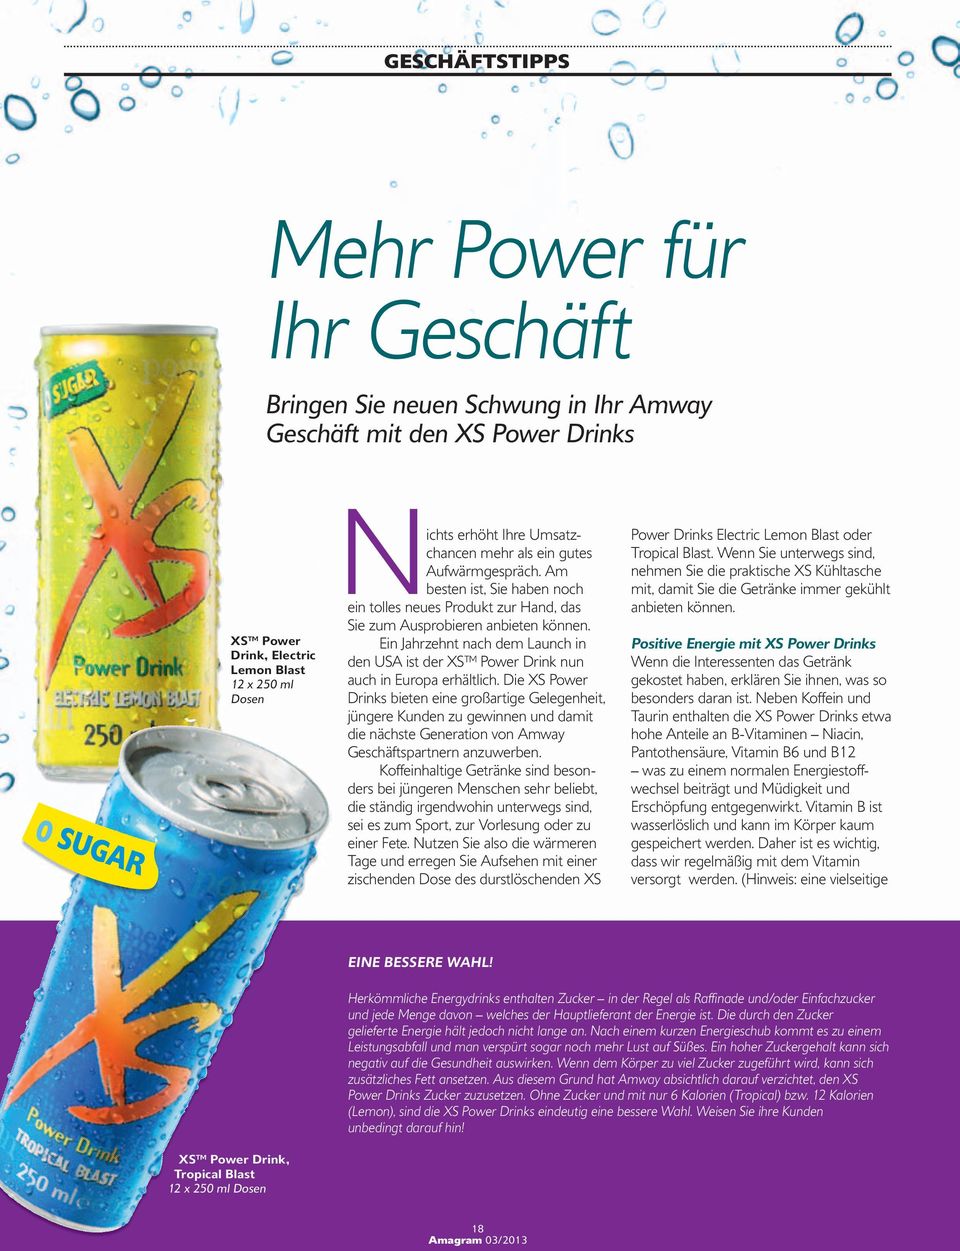 Ein Jahrzehnt nach dem Launch in den USA ist der XS Power Drink nun auch in Europa erhältlich.